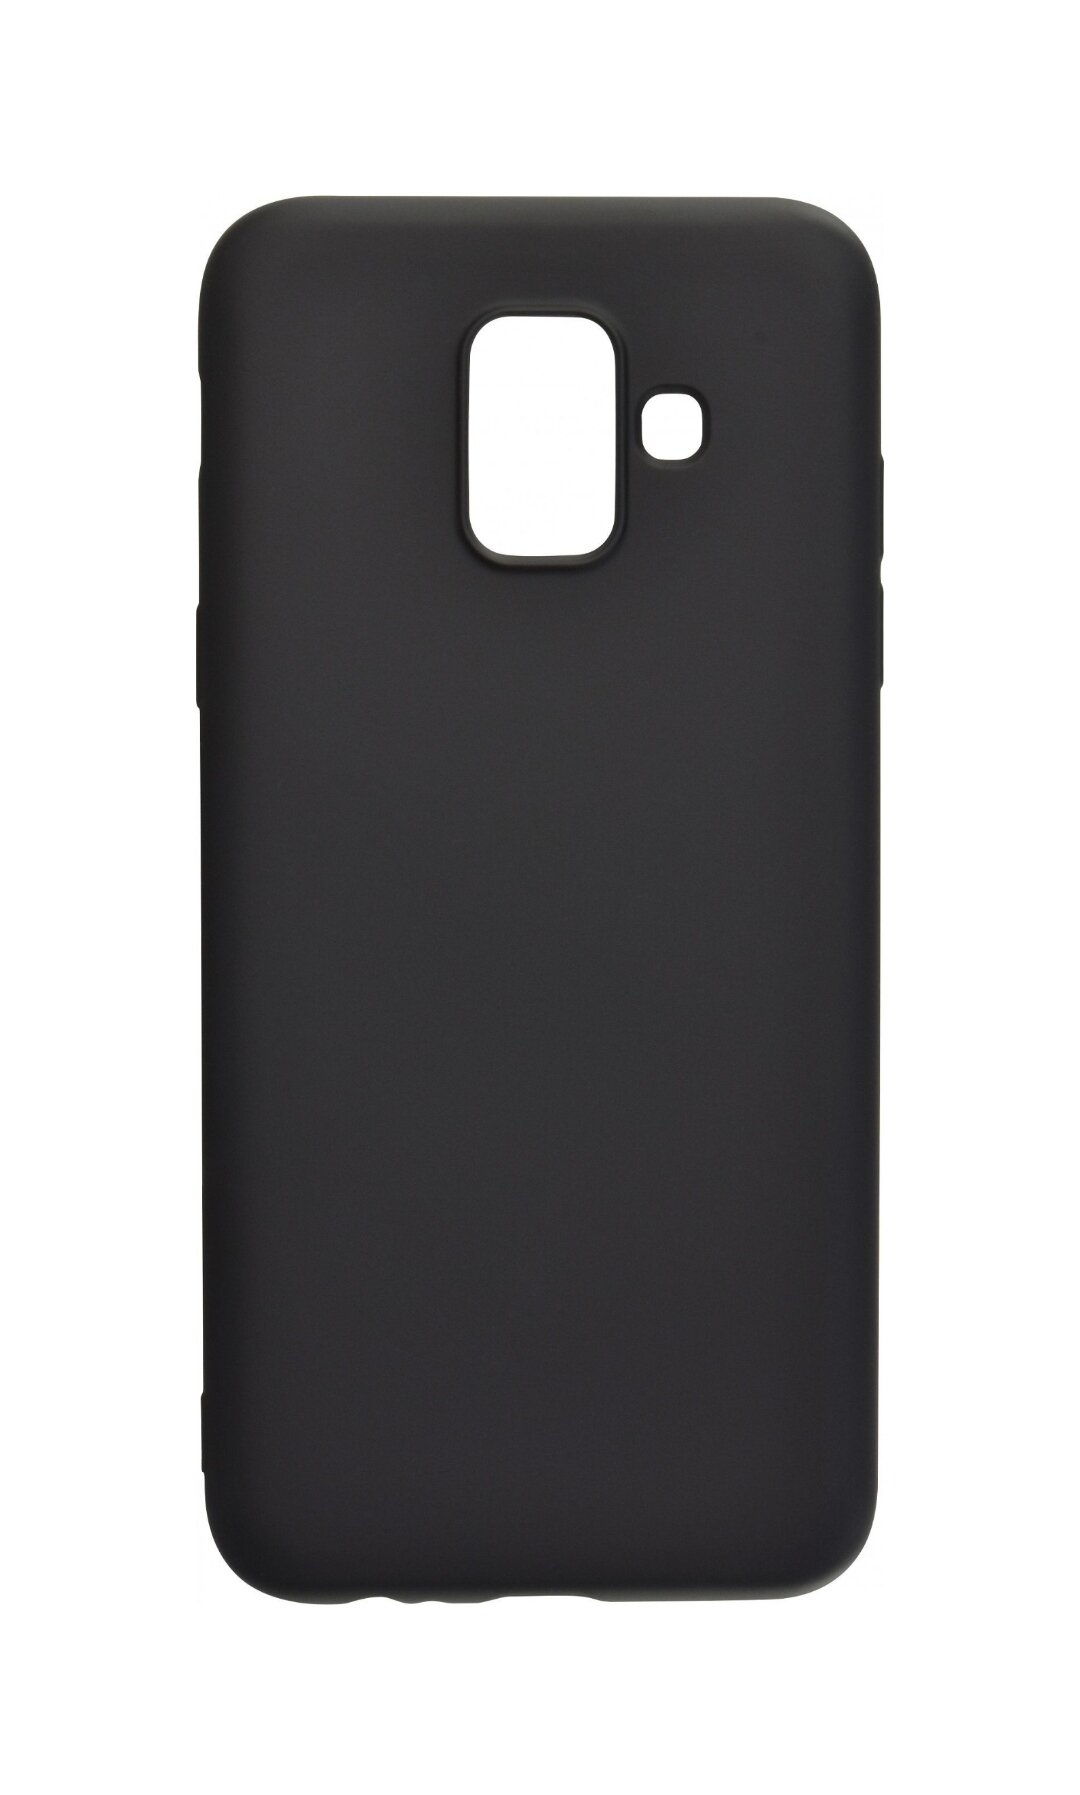 Чехол накладка для Samsung Galaxy A8 2018 черный, самсунг галакси а8 2018